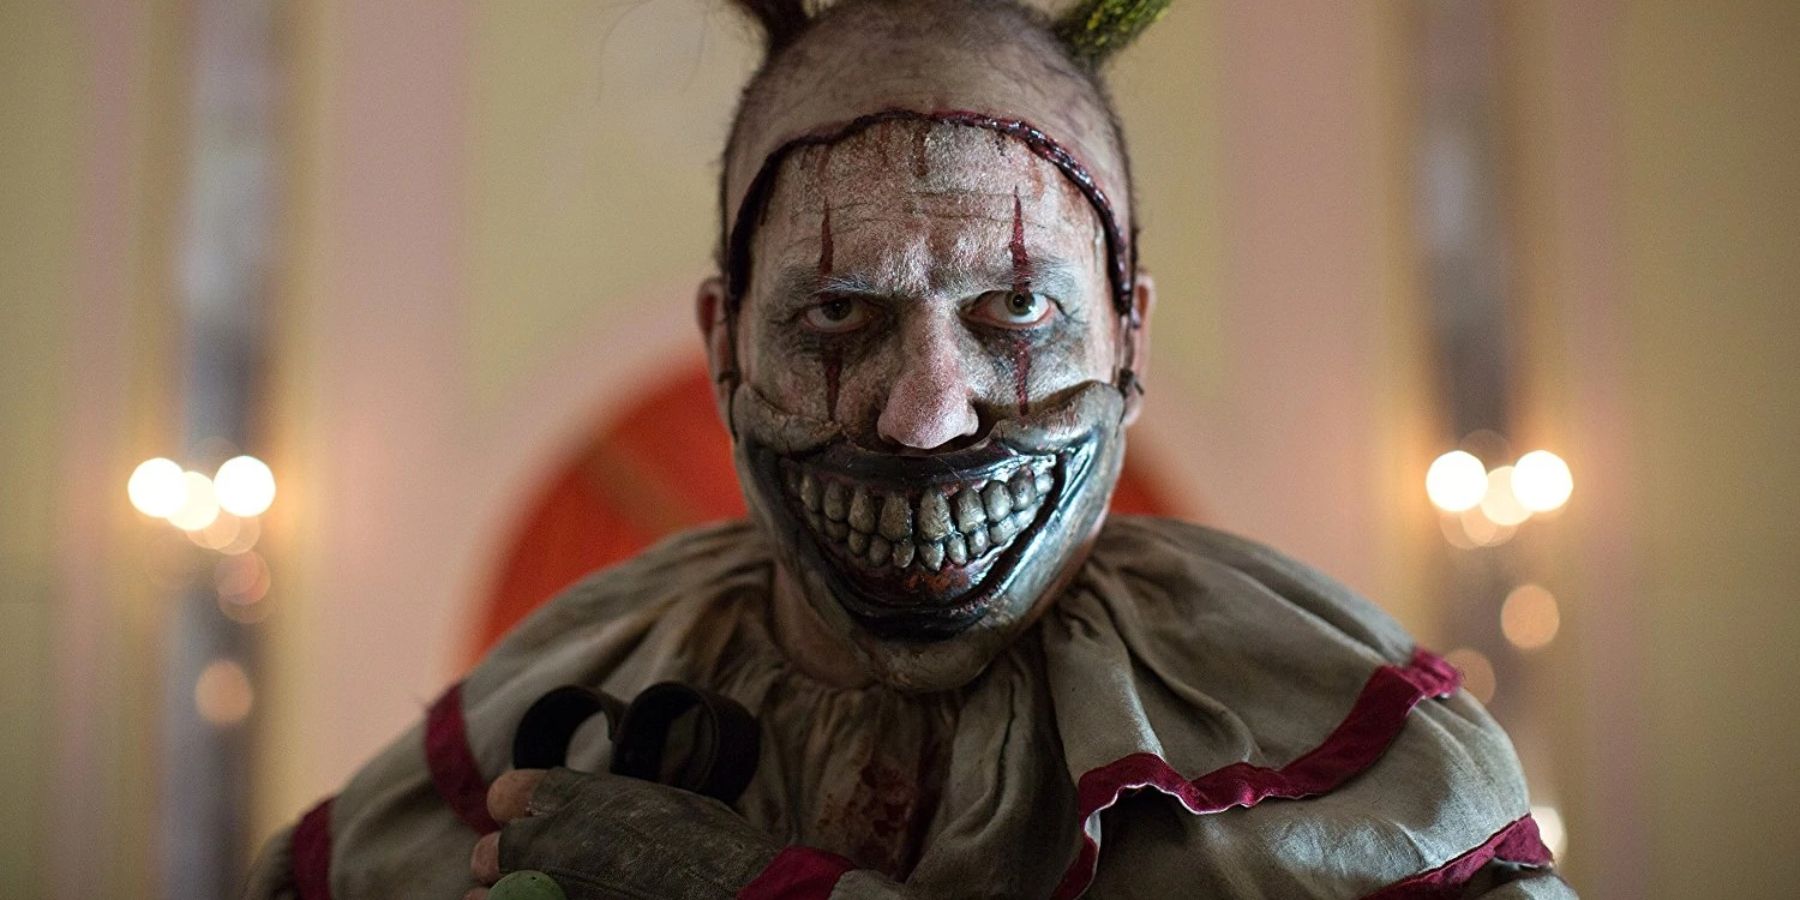 Twisty The Clown from American Horror Story: Freak Show